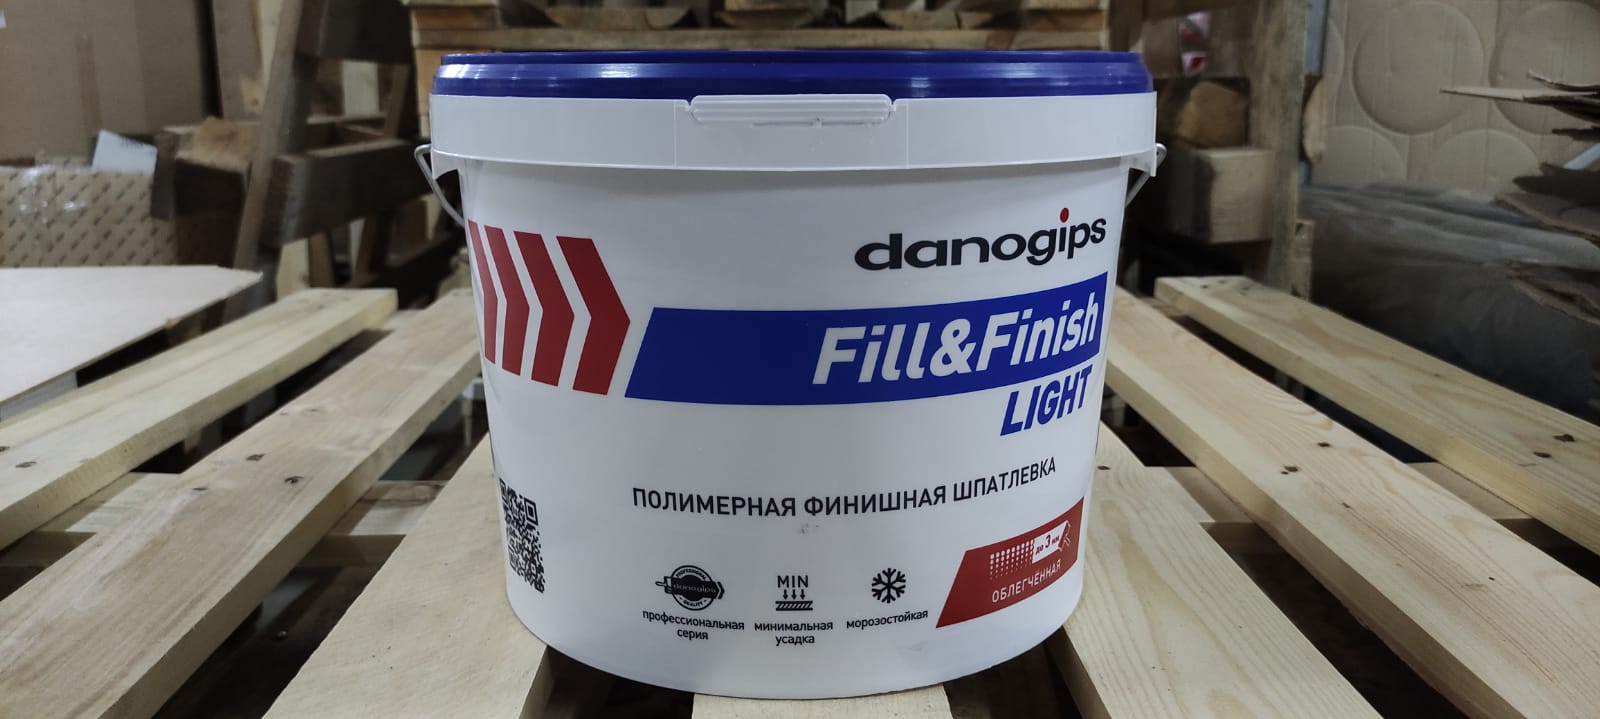 Полимерная финишная готовая шпатлевка Даногипс / Danogips Fill Finish Light 10 л